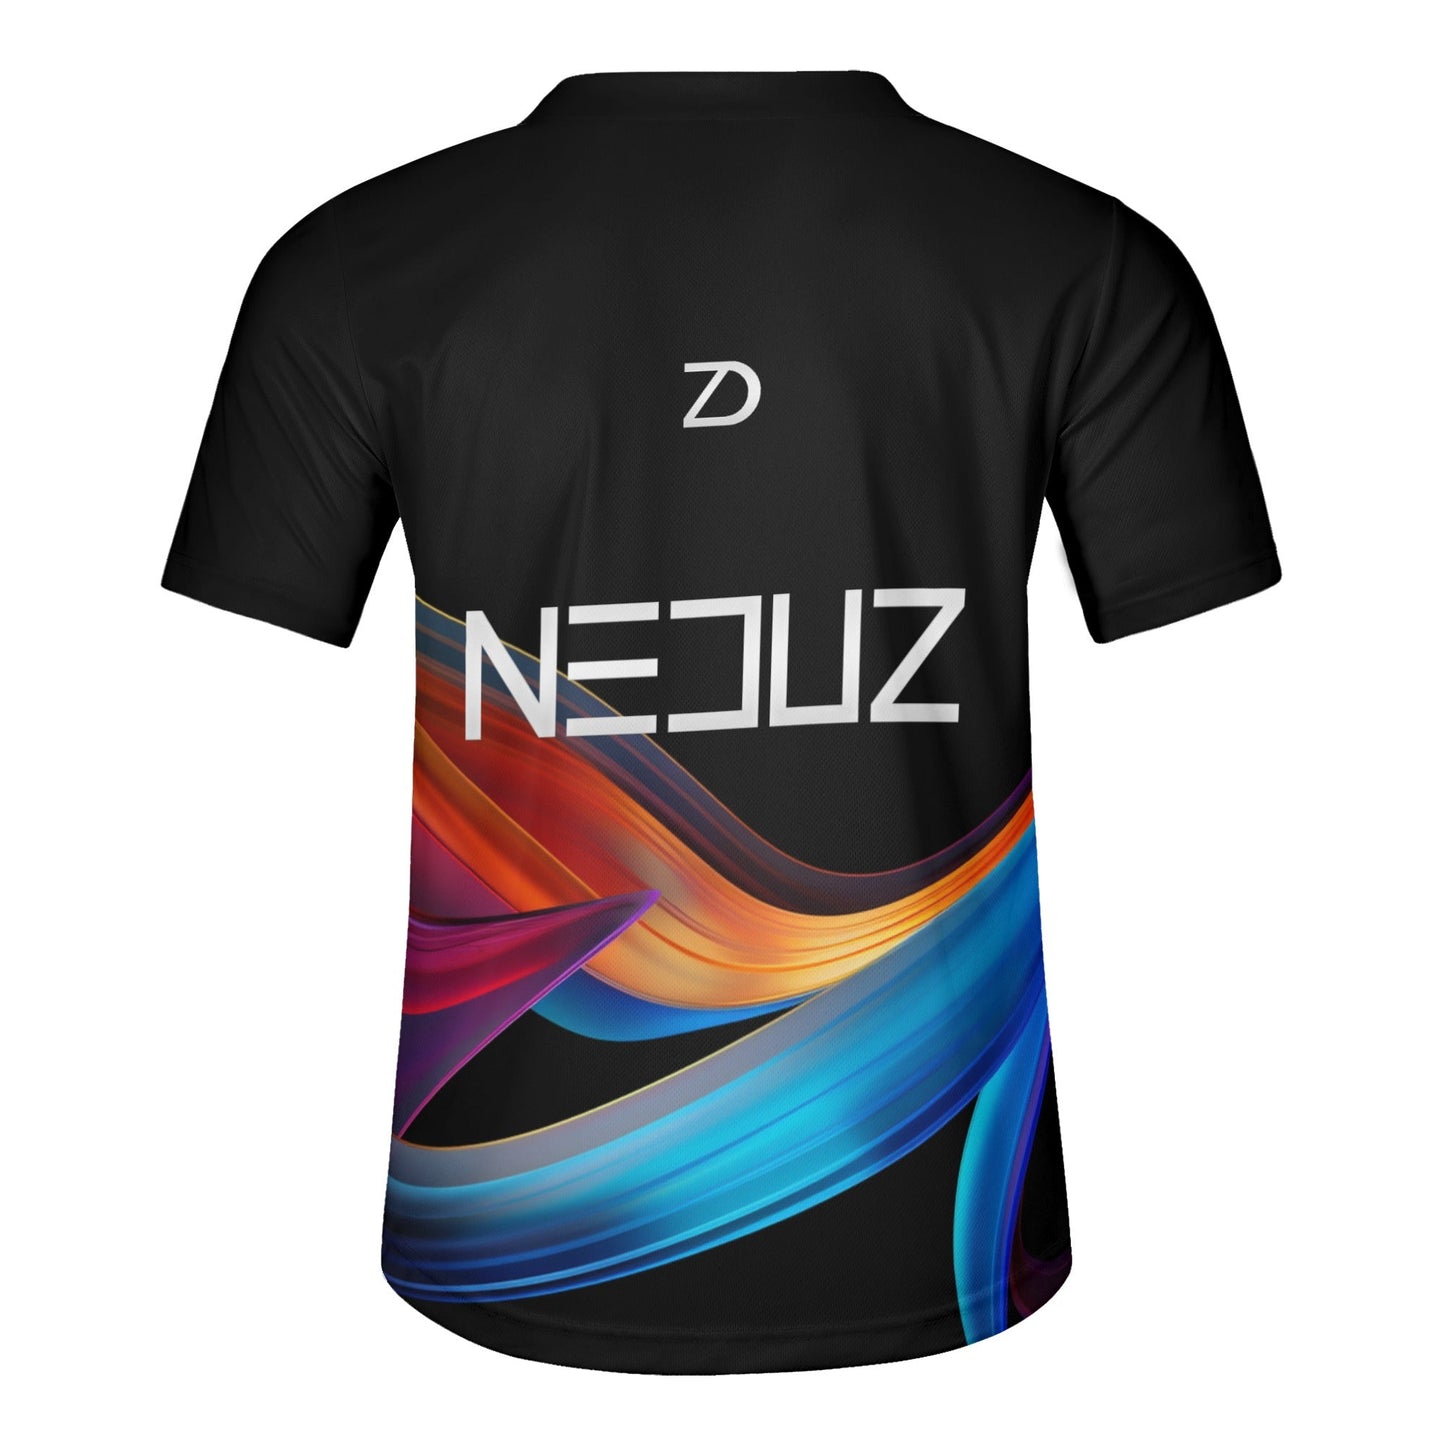 2 Neduz Designs Mens Lightweight Short Sleeve Training